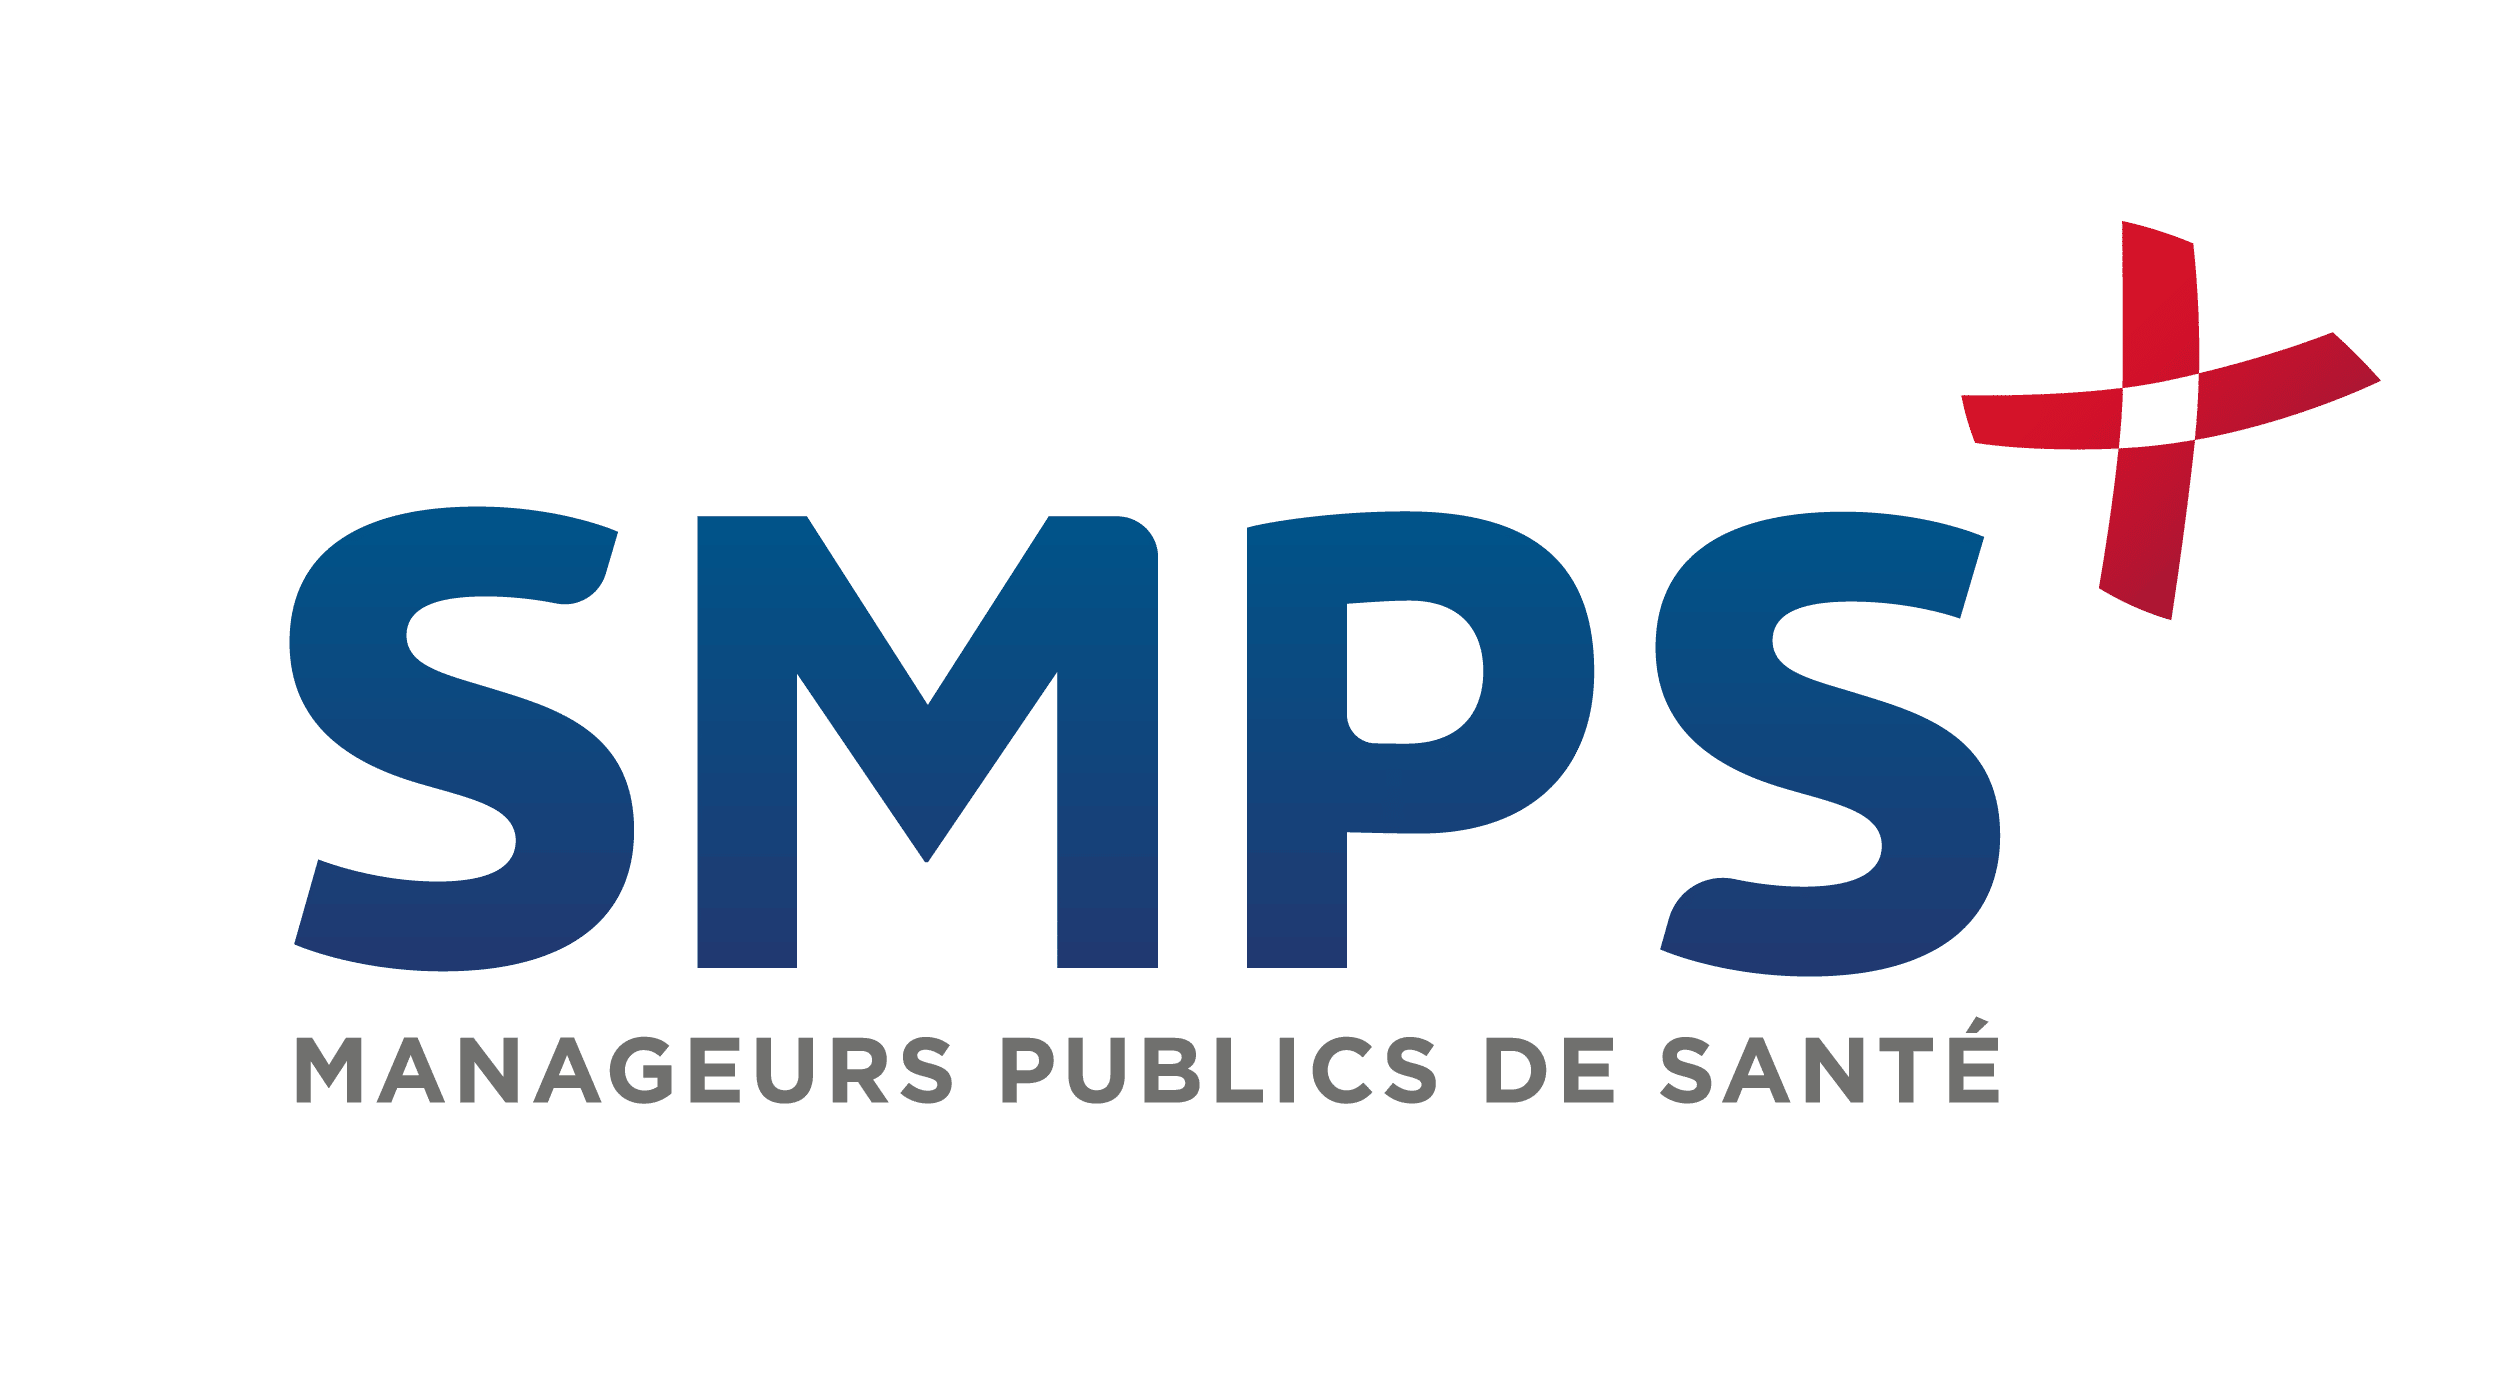 Le SMPS (Syndicat des Manageurs Publics de Santé)